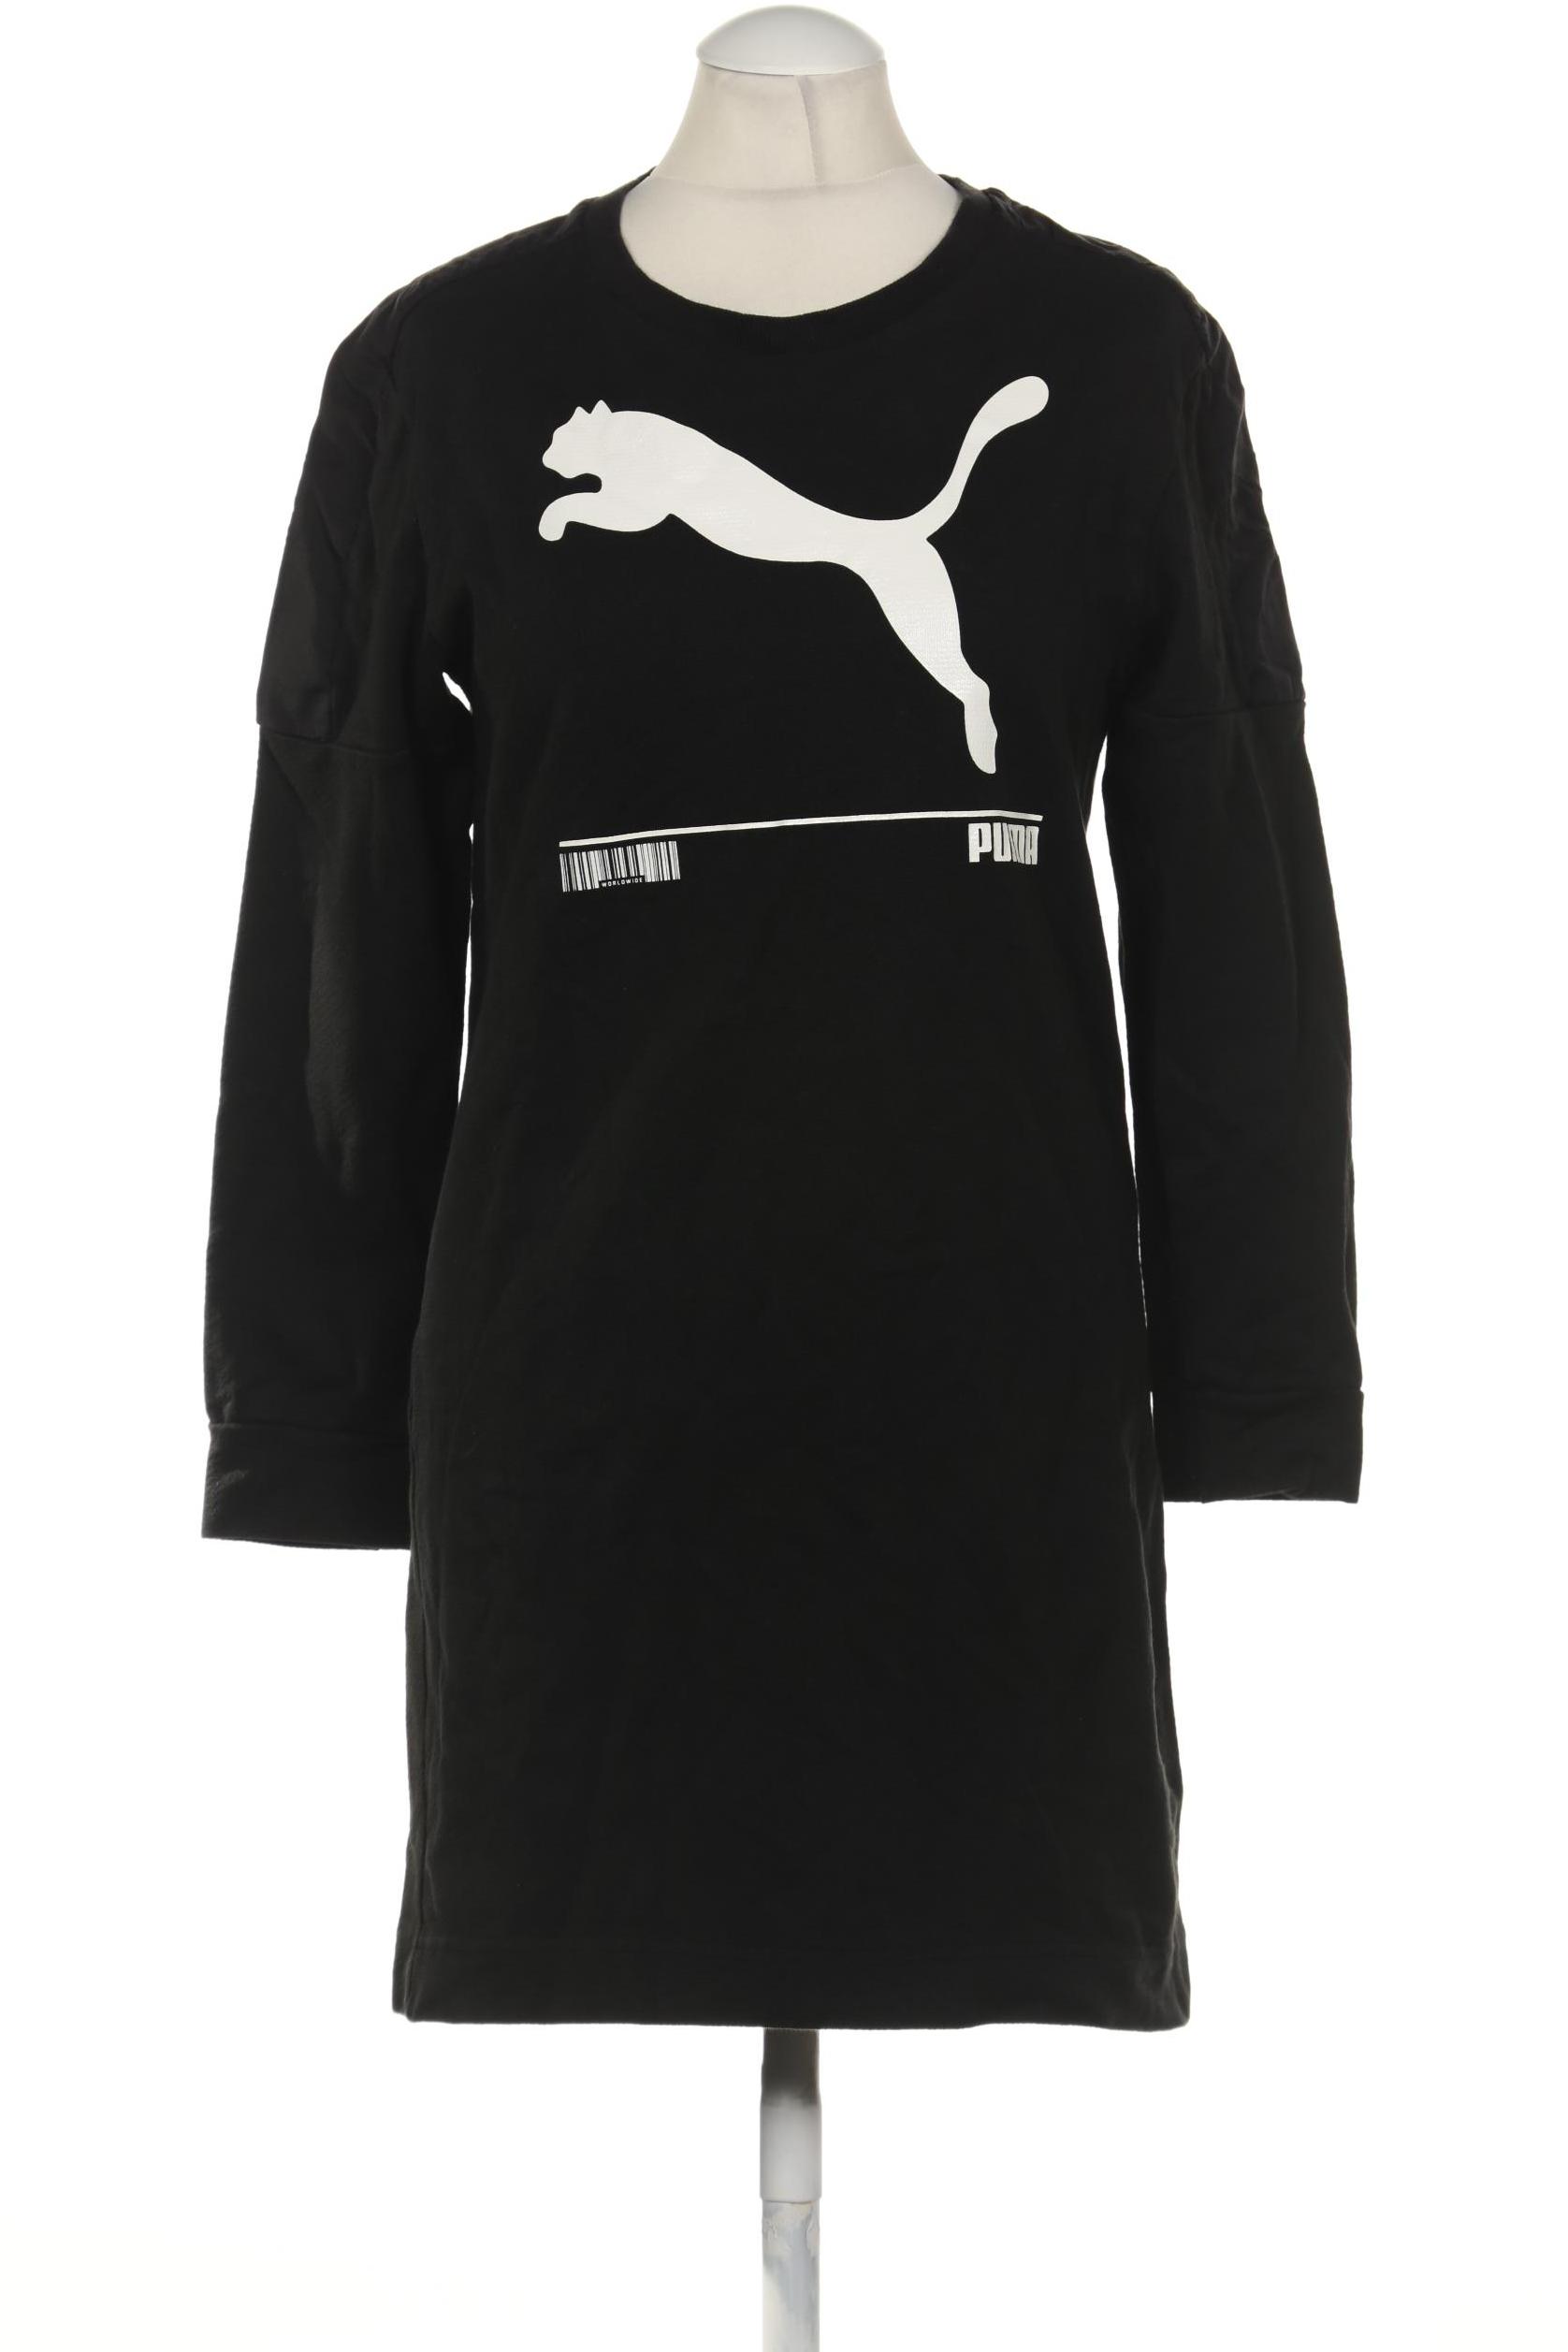 PUMA Damen Kleid, schwarz von Puma